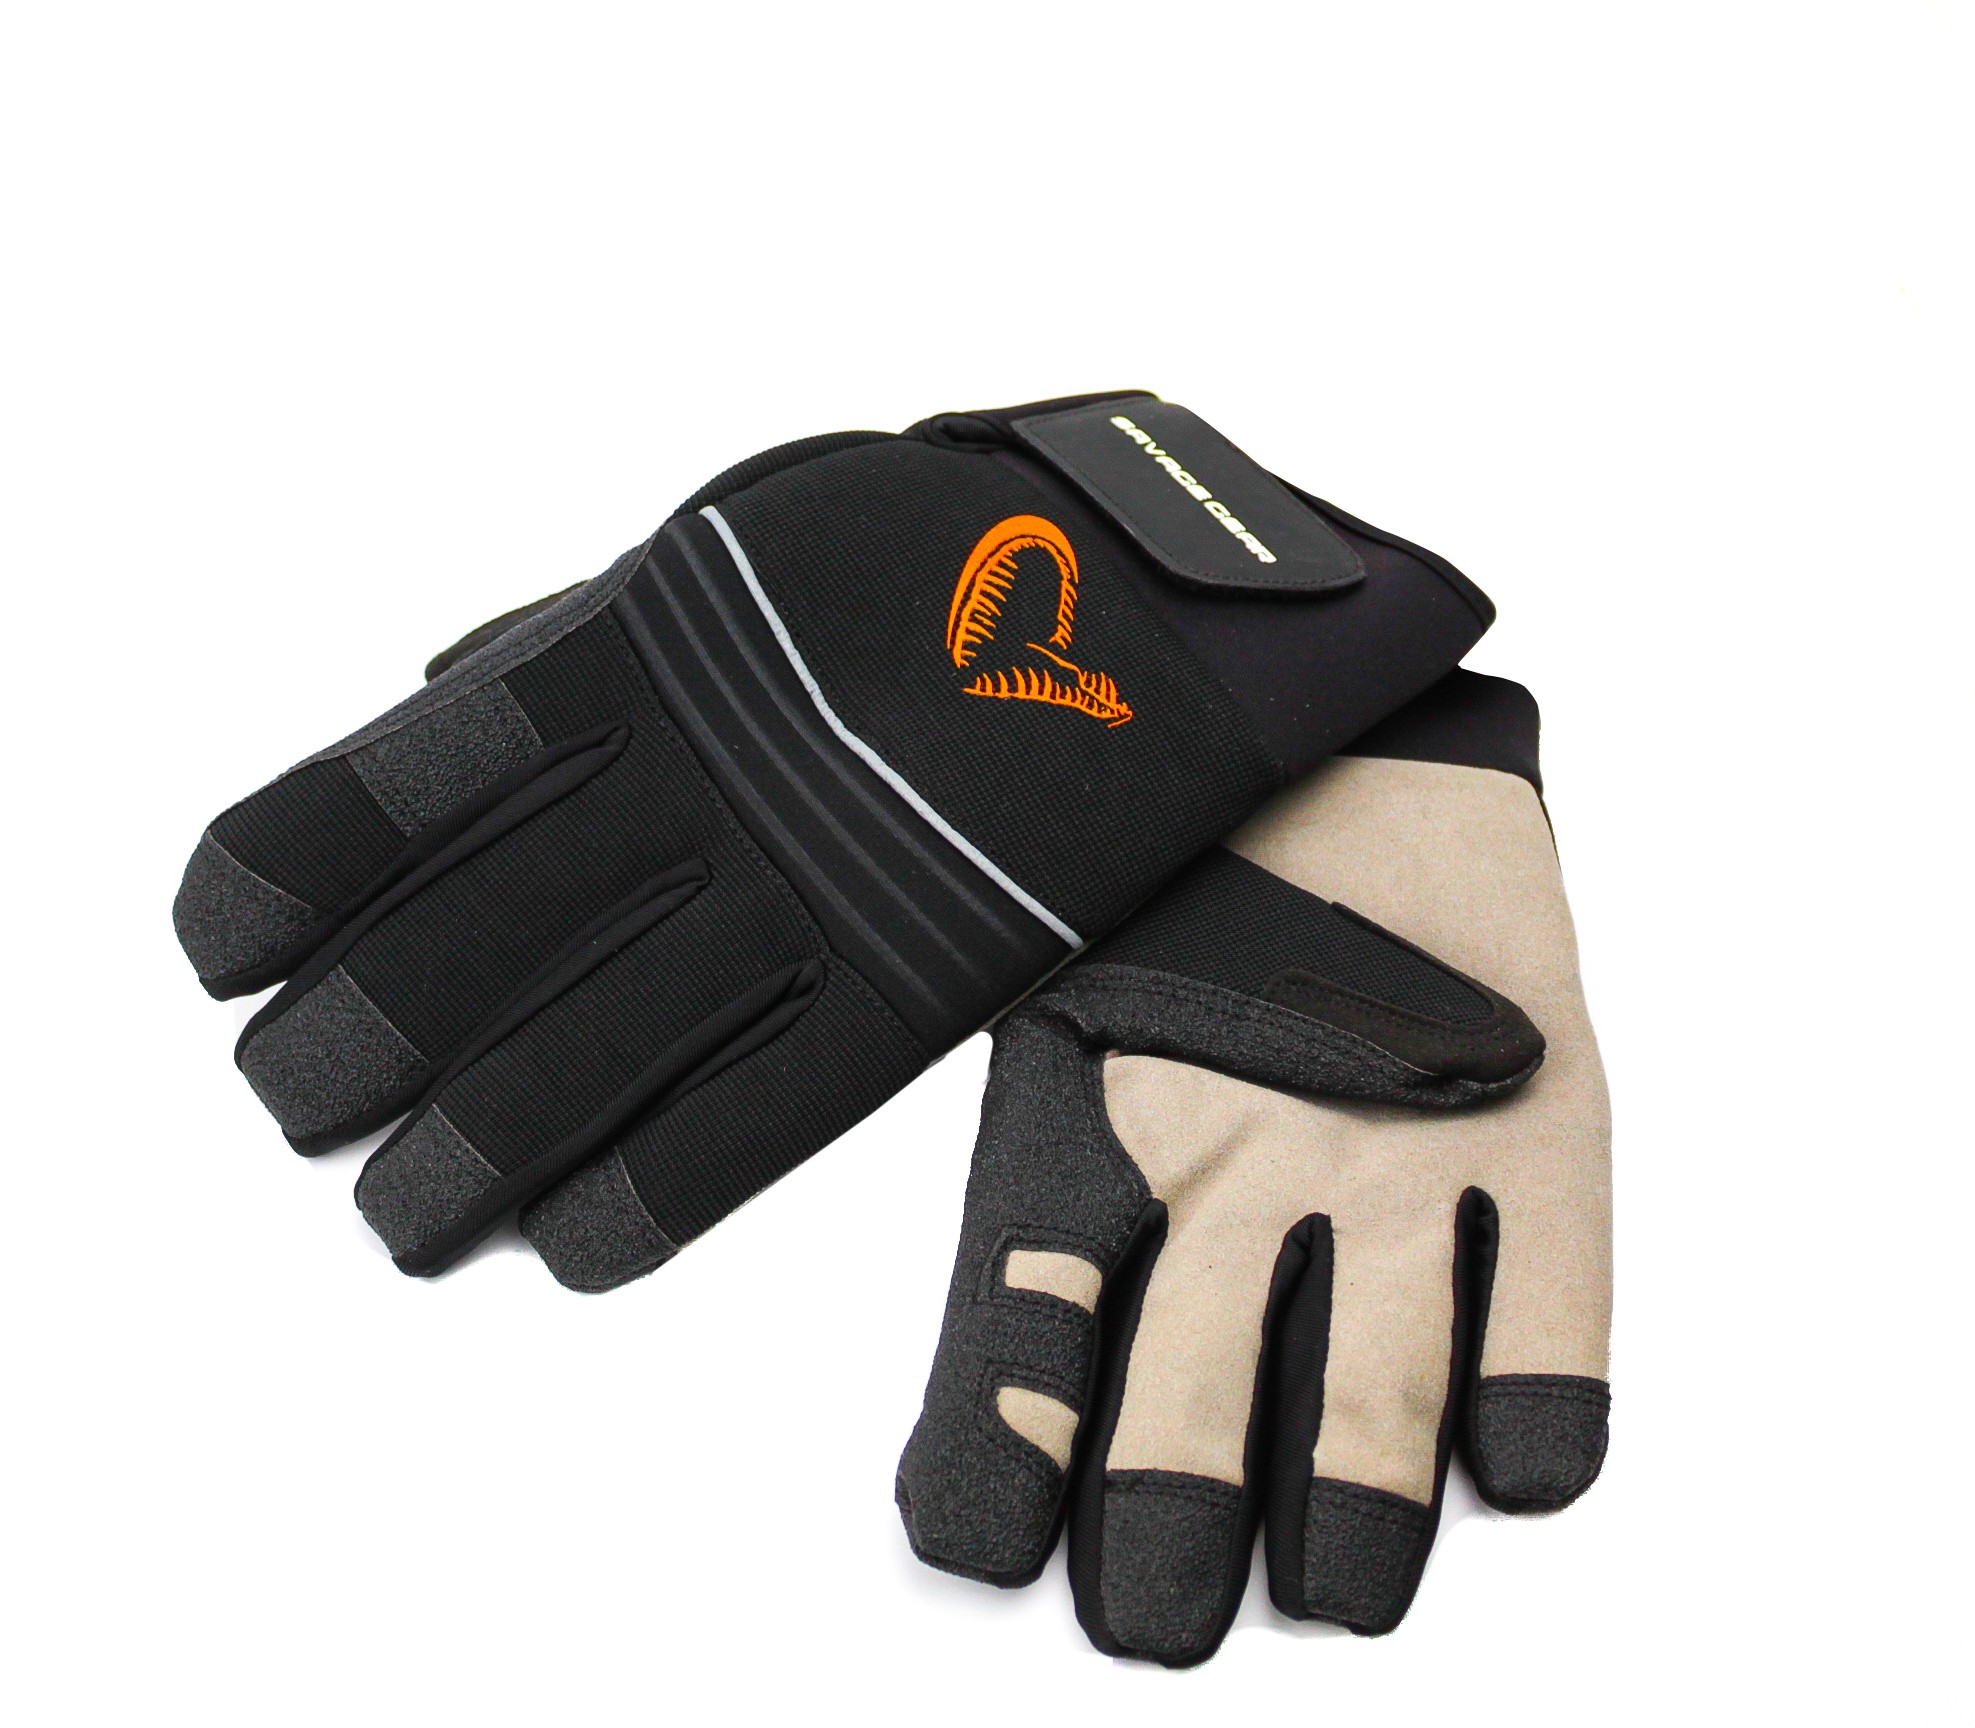 Перчатки Savage Gear Winter thermo glove - фото 1